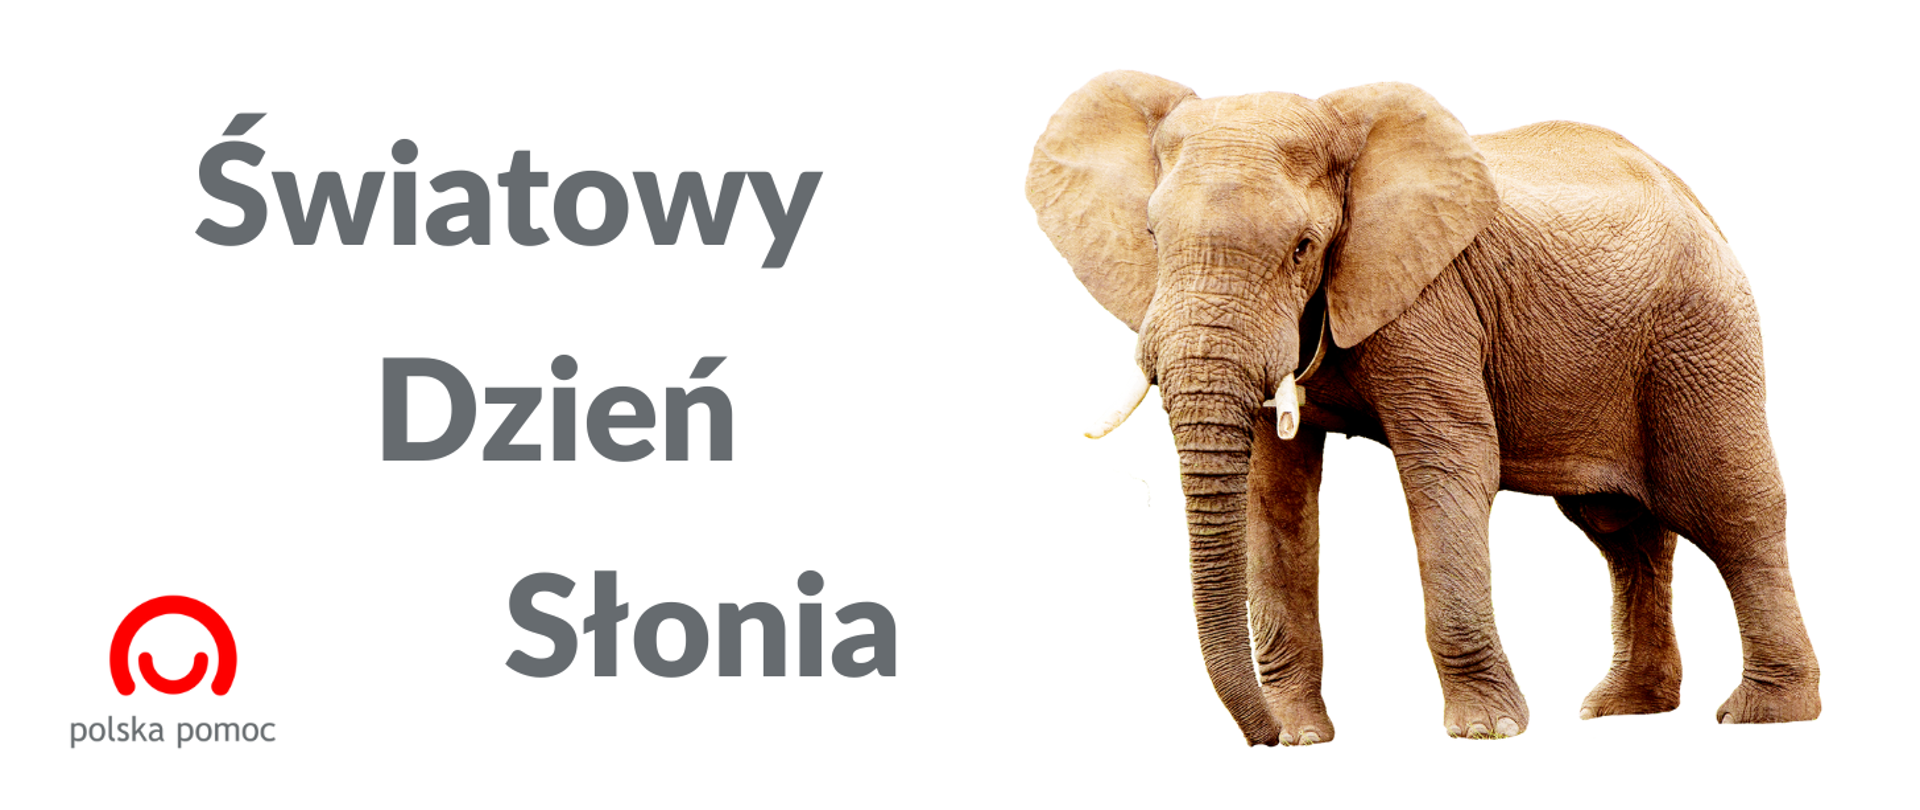 grafika przedstawiająca zdjęcie słonia i napis Światowy Dzień Słonia, widoczne jest również logo Polskiej pomocy